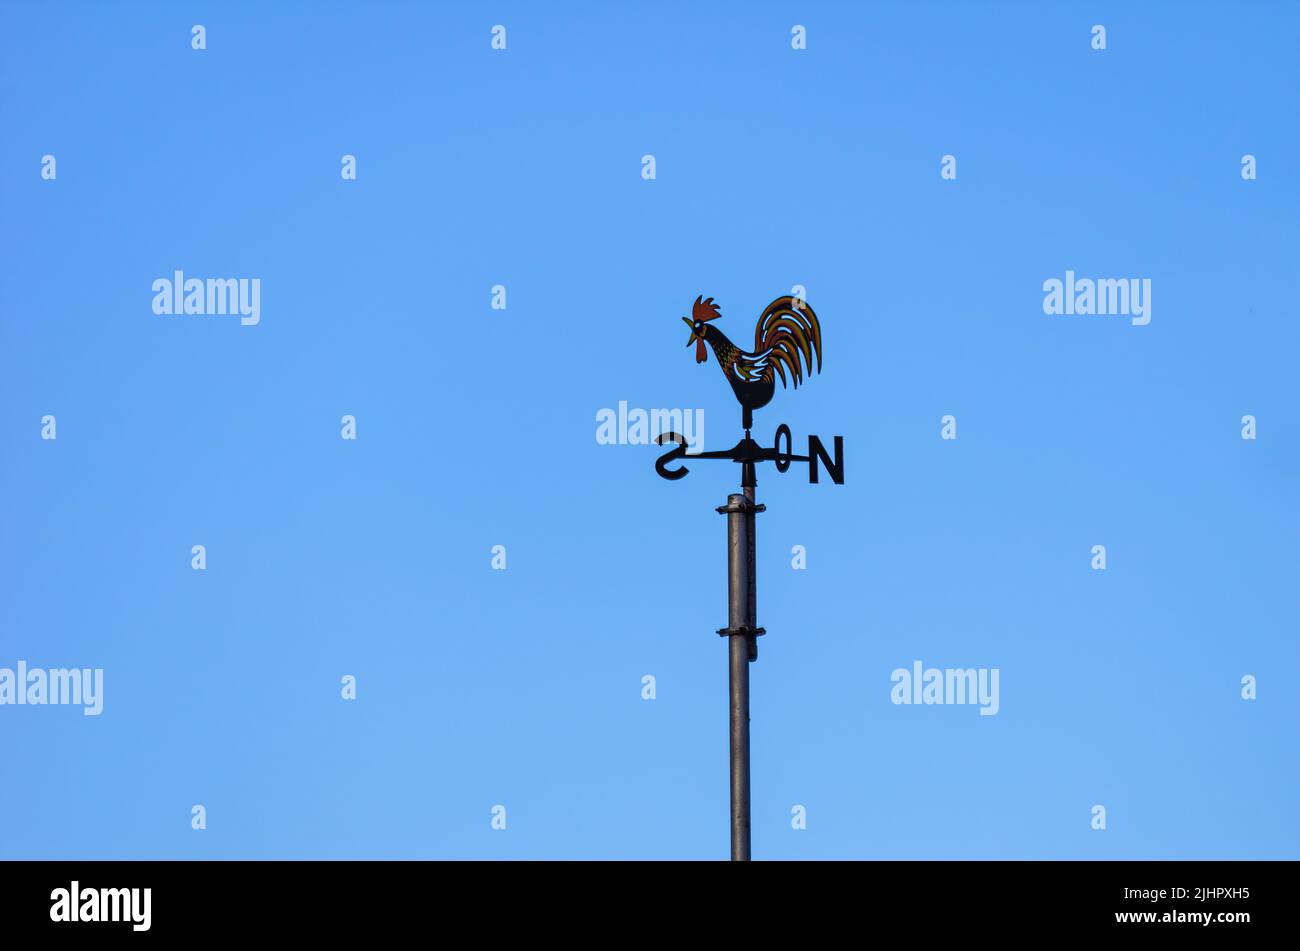 Wetterfahne oder Wetterhahn mit Windrichtungsanzeiger in Form eines Kompasses stieg auf einem Dach gegen einen blauen Himmel. Stockfoto